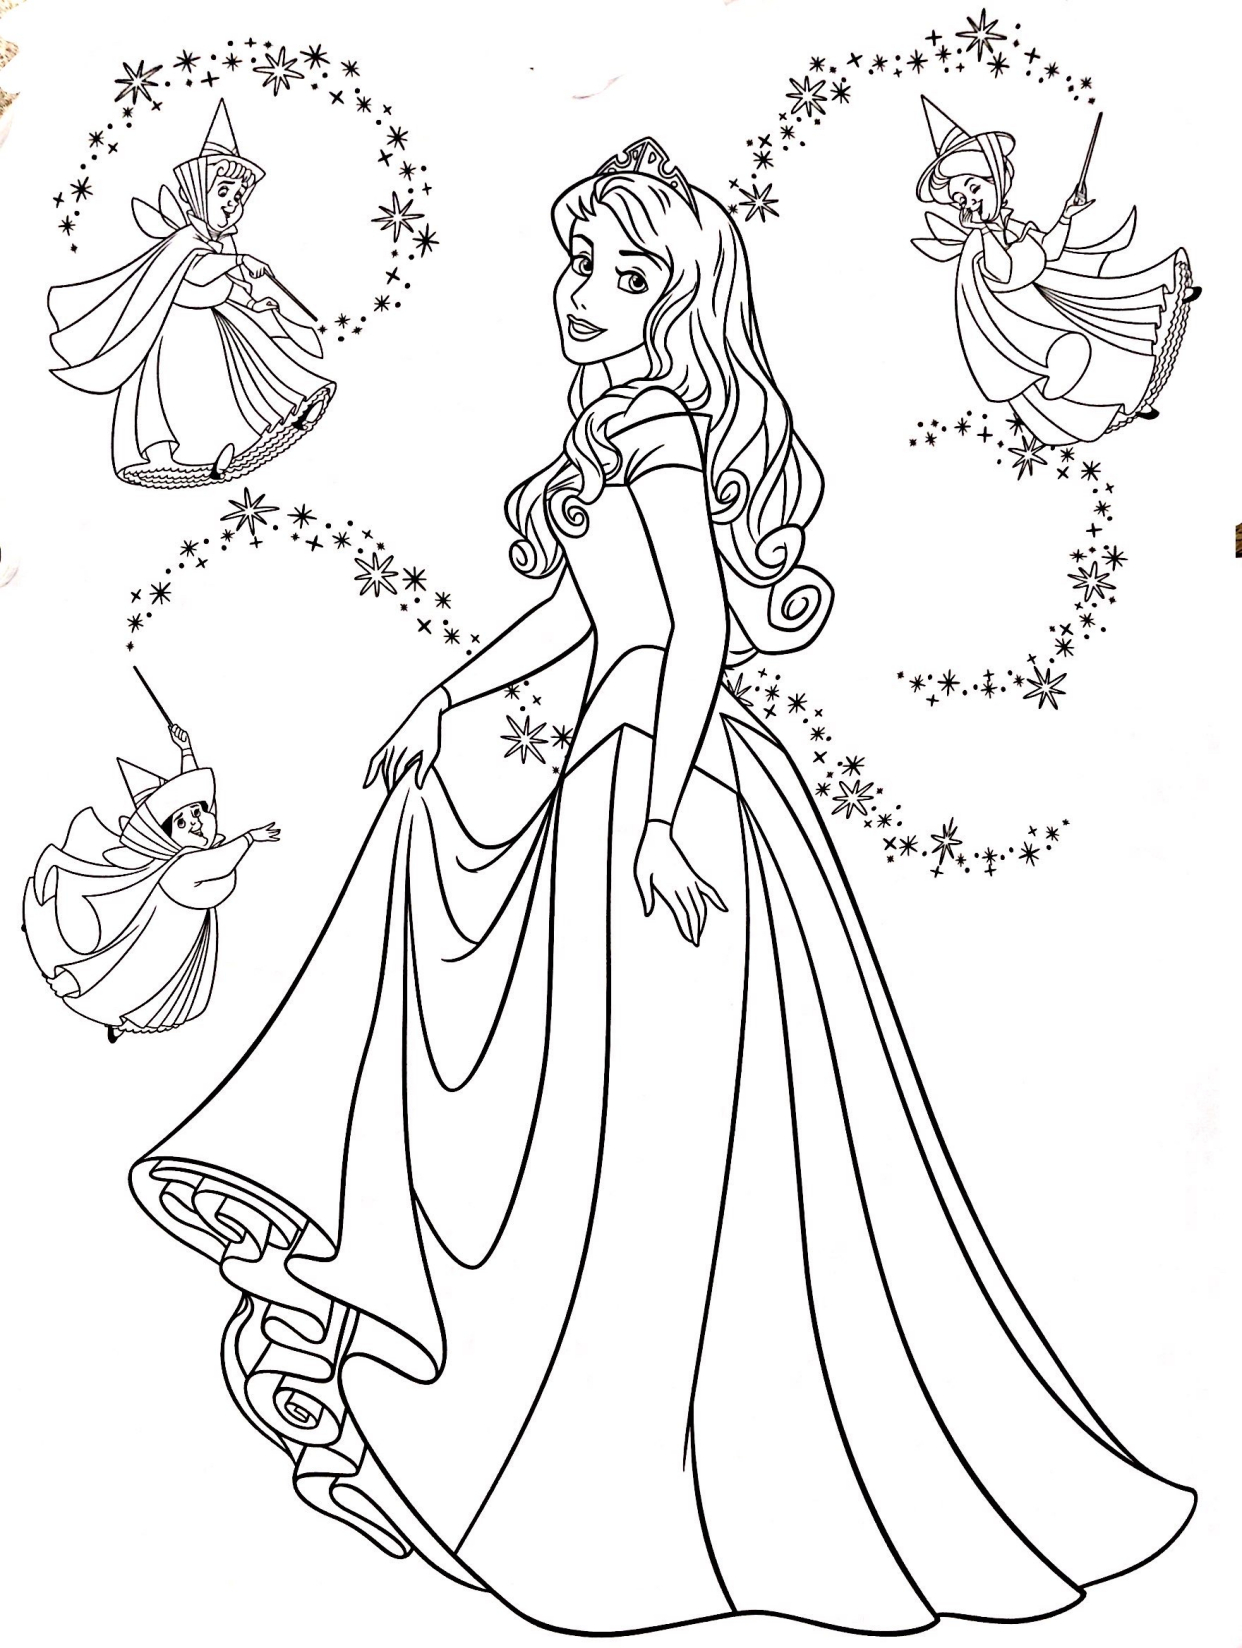 迪士尼公主的画法图片